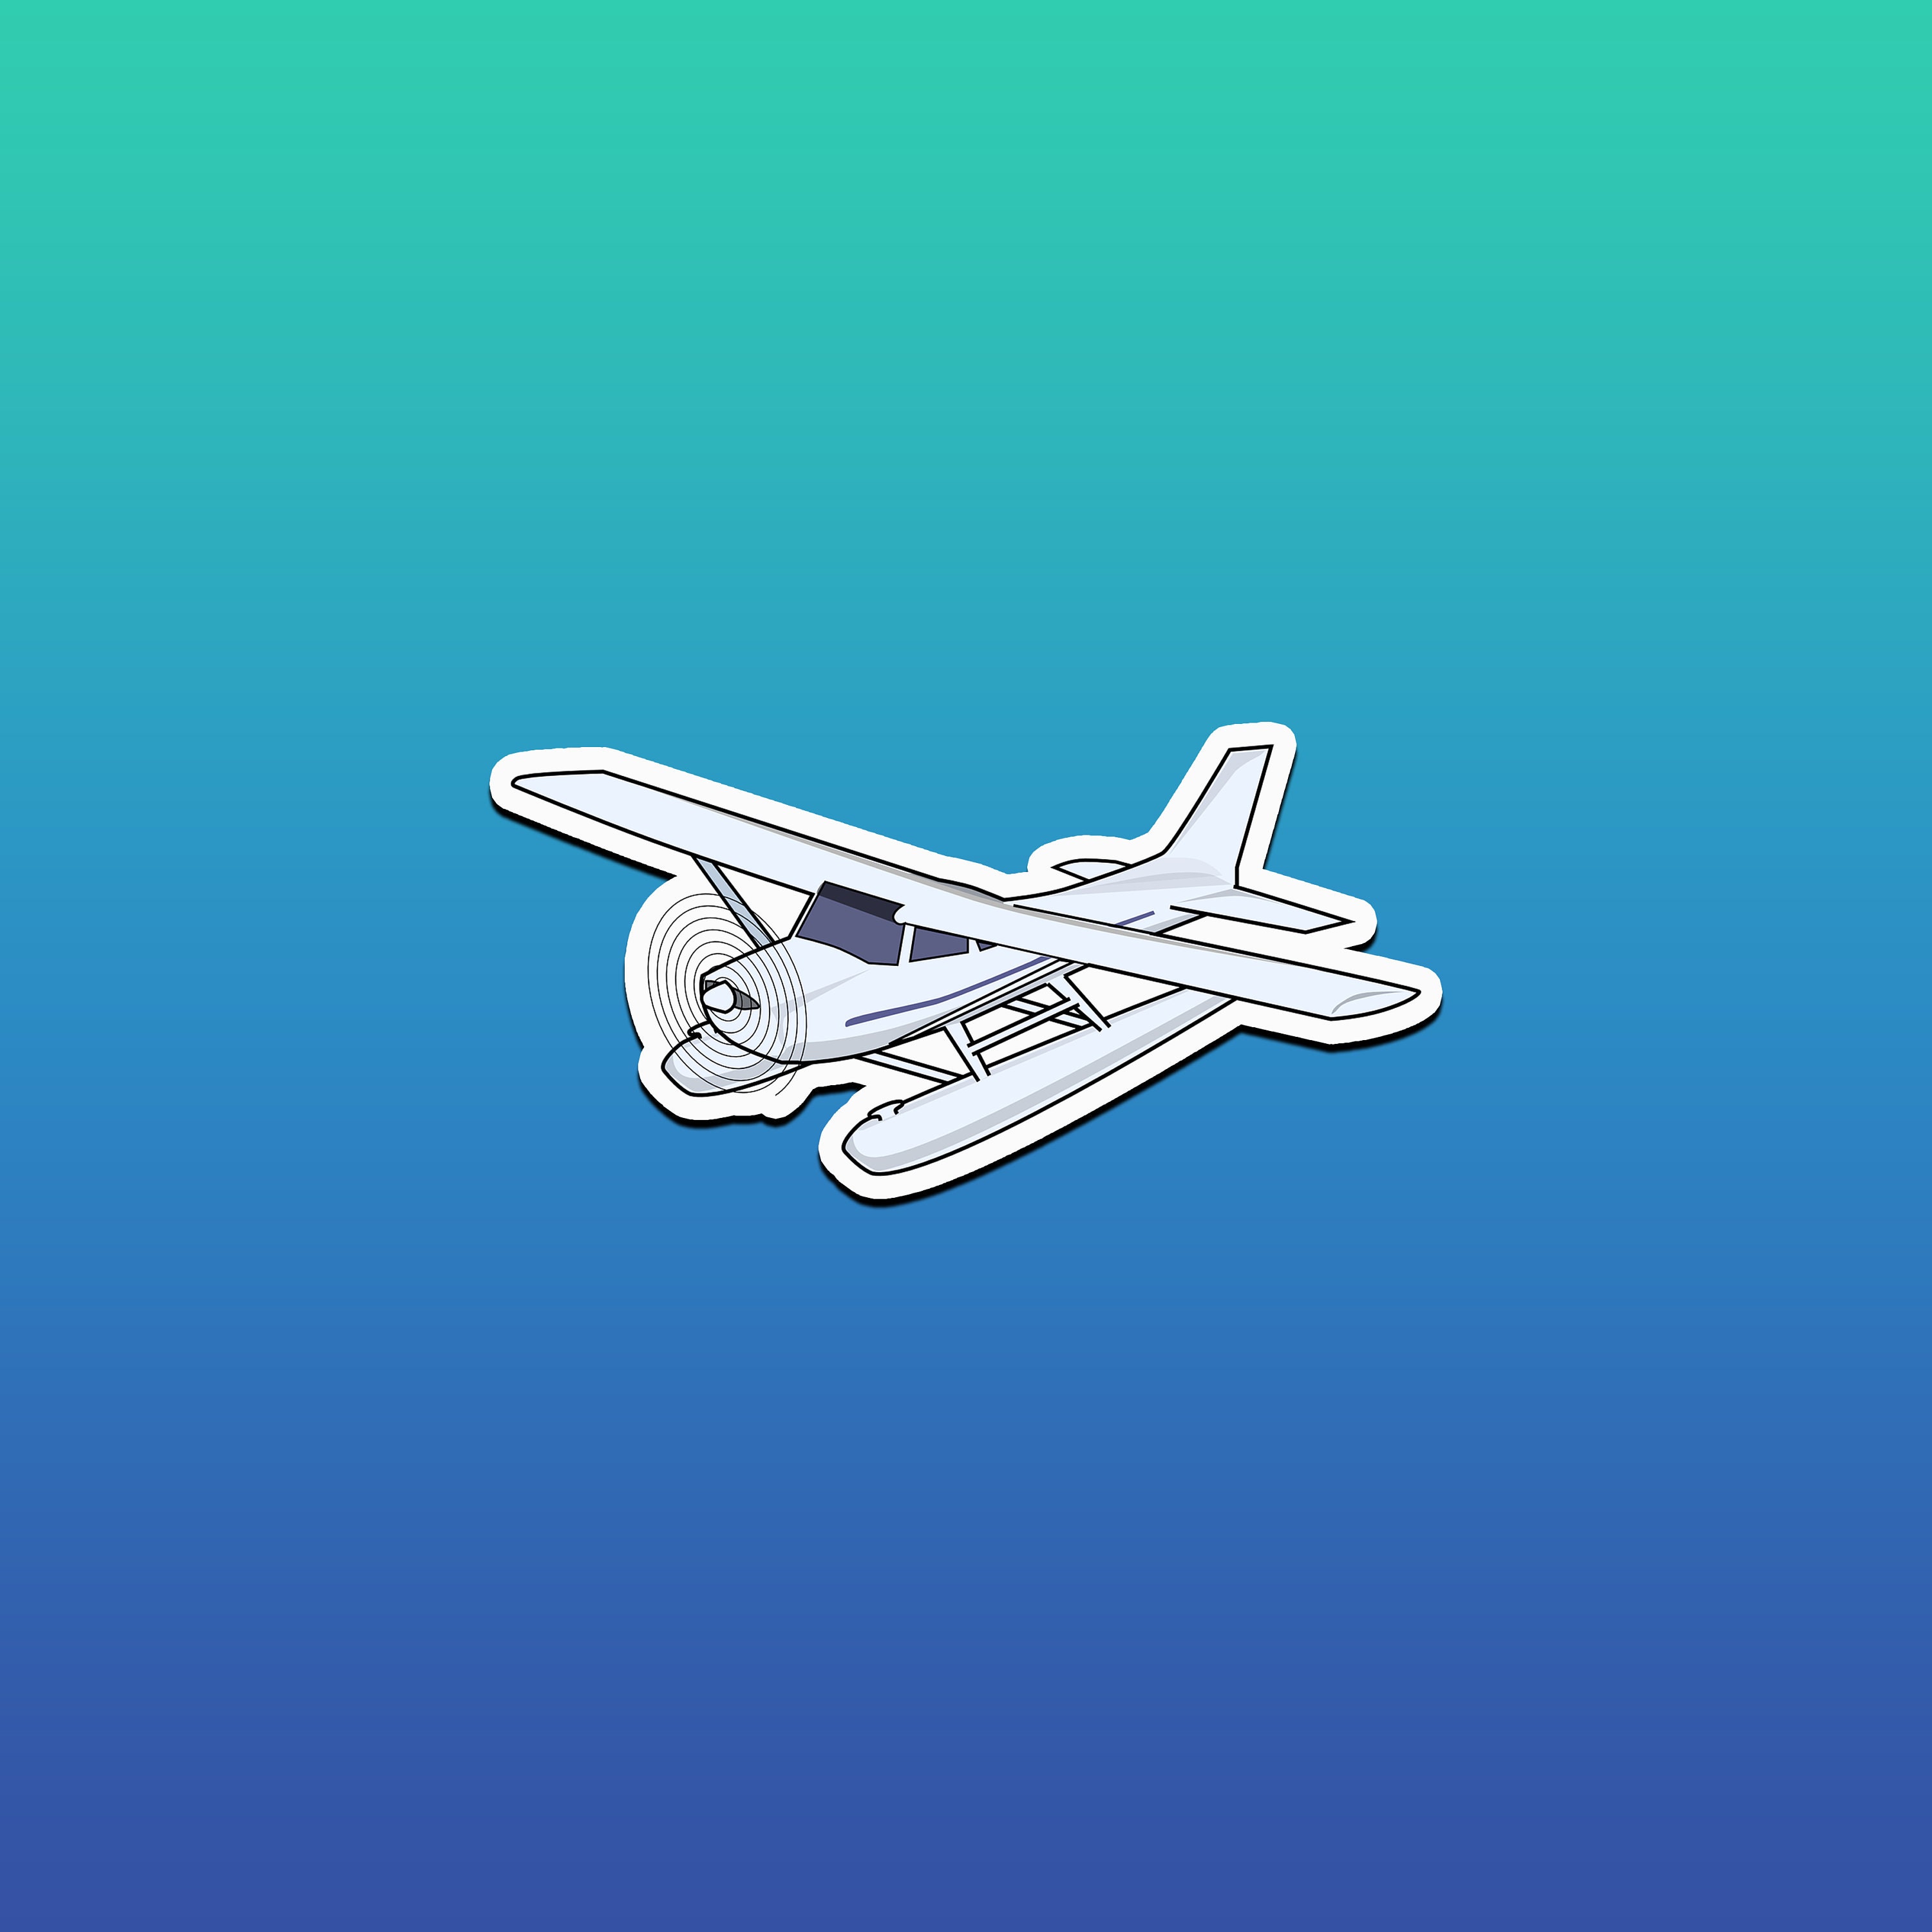 Airplane Sticker Aviation Stickers Plane Decals Pilot | Etsy